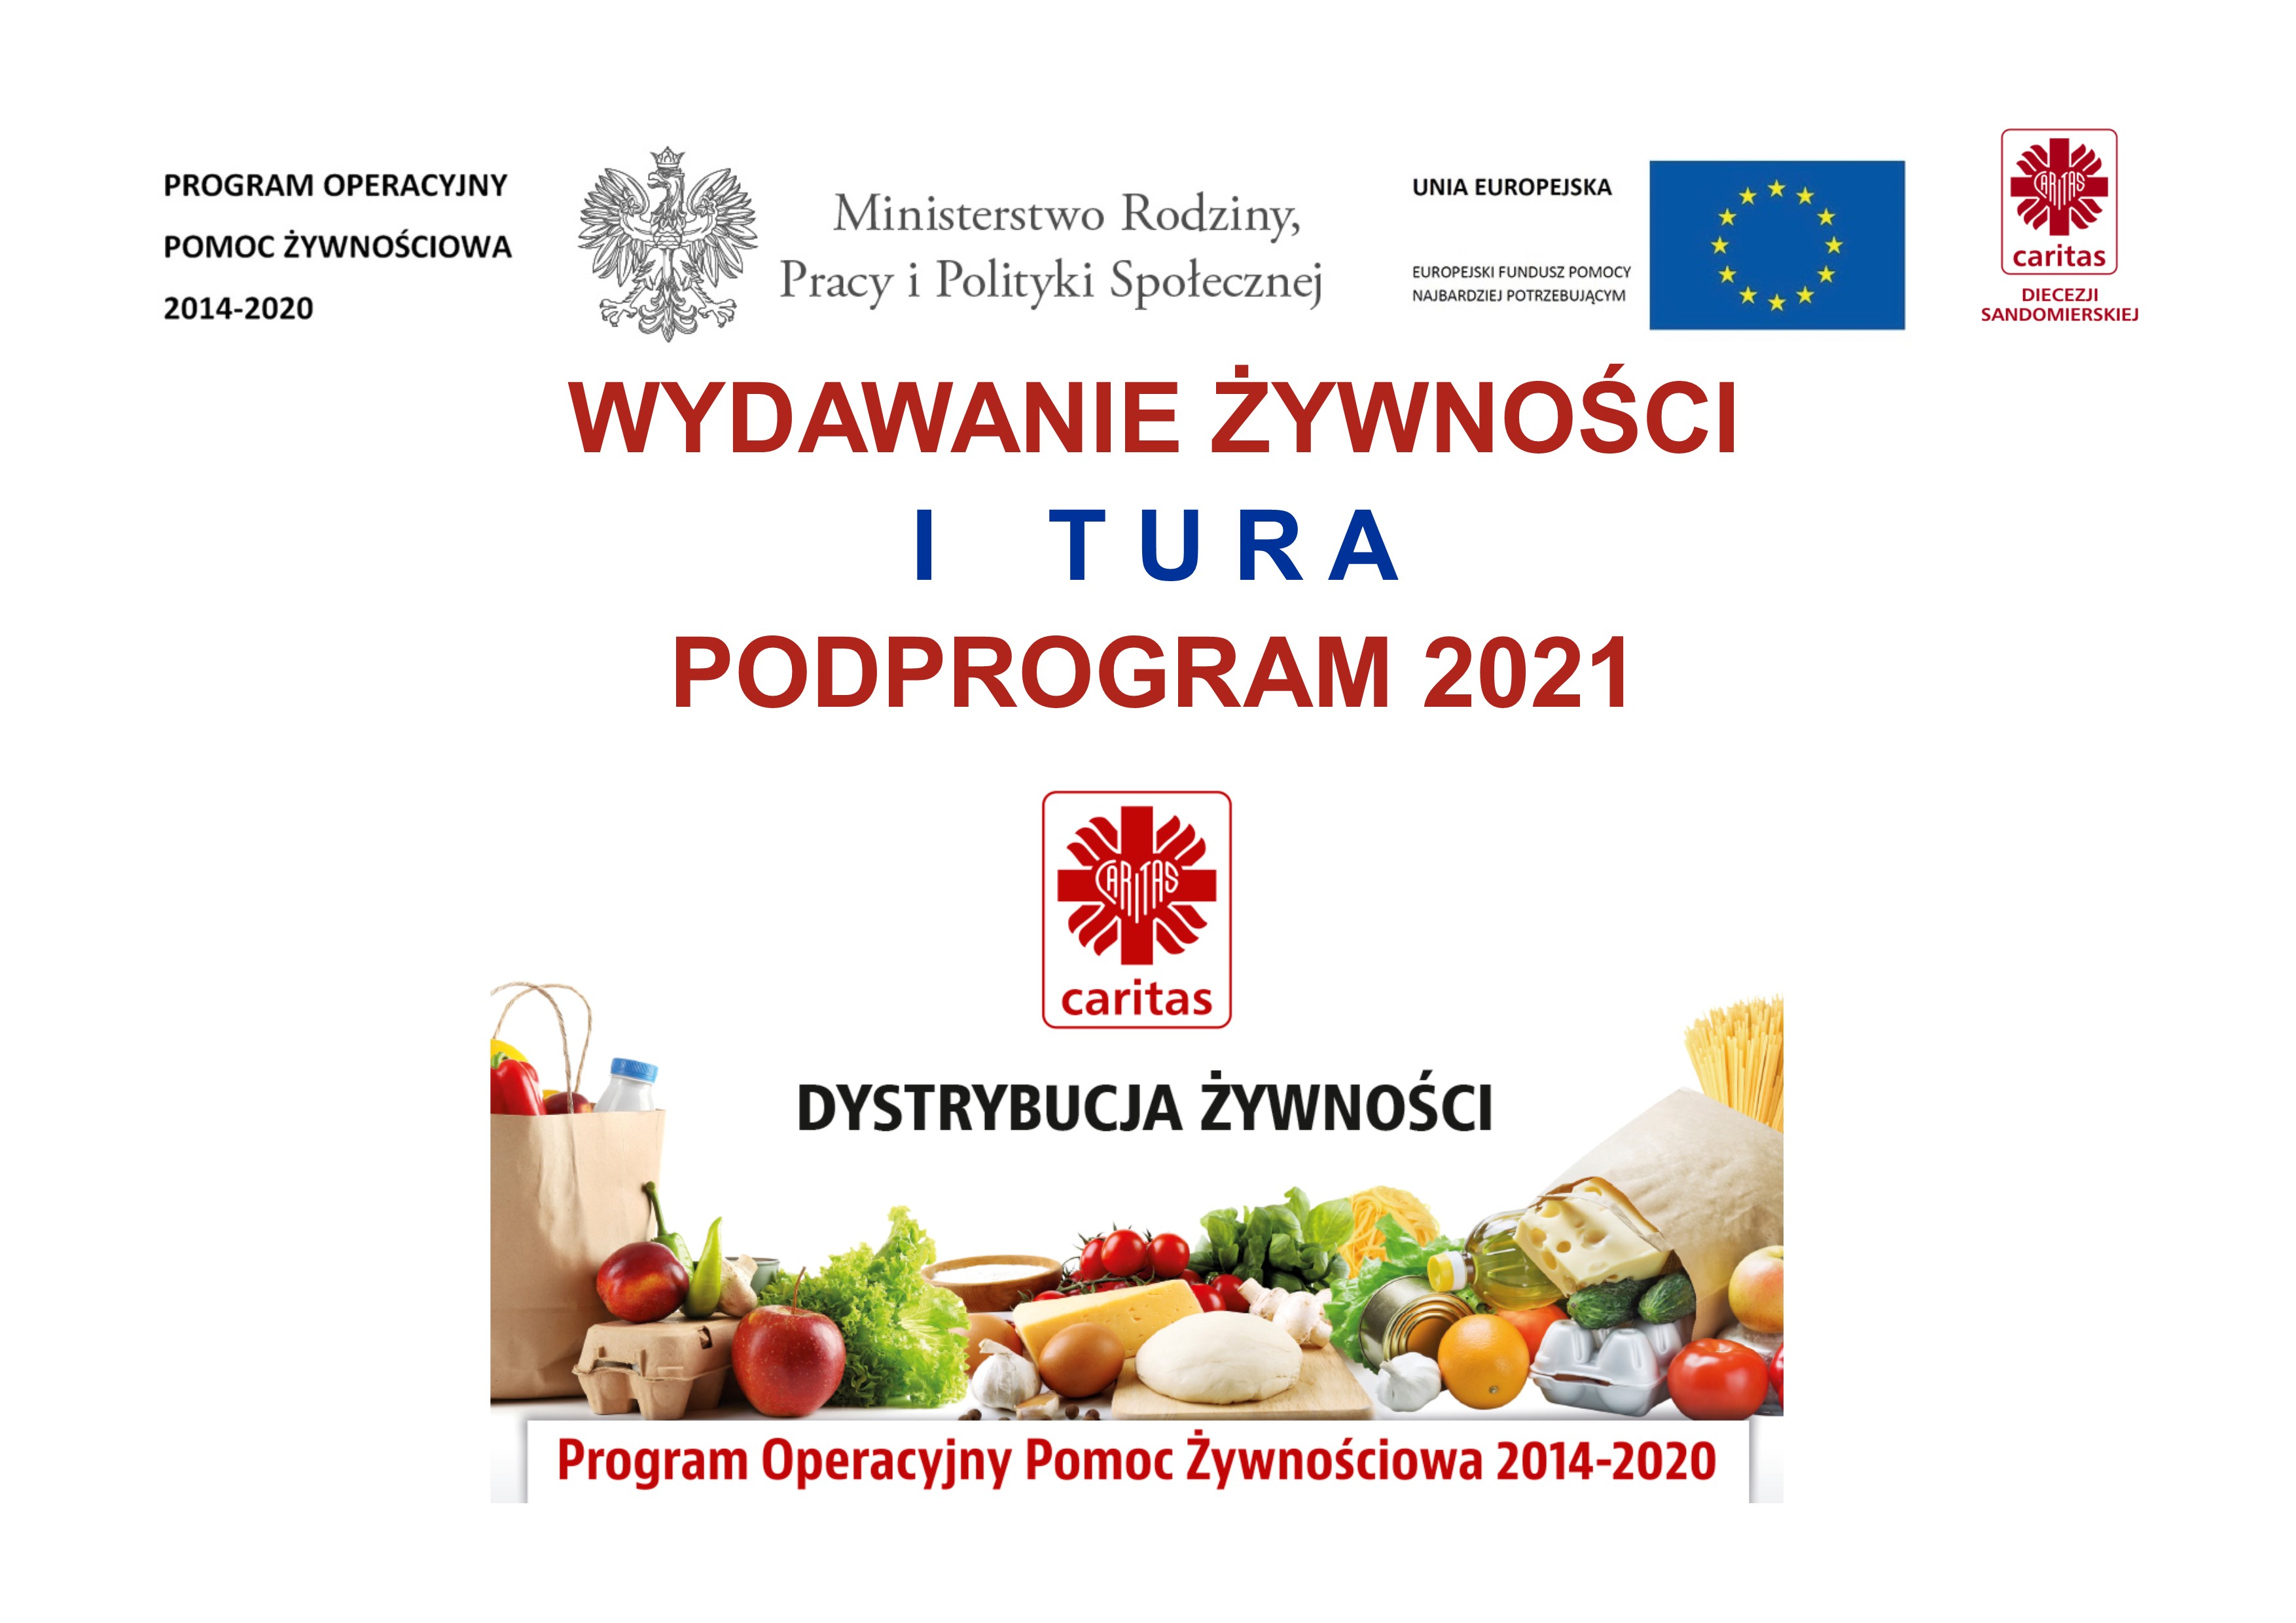 Podprogram 2021 - I tura wydawania żywności